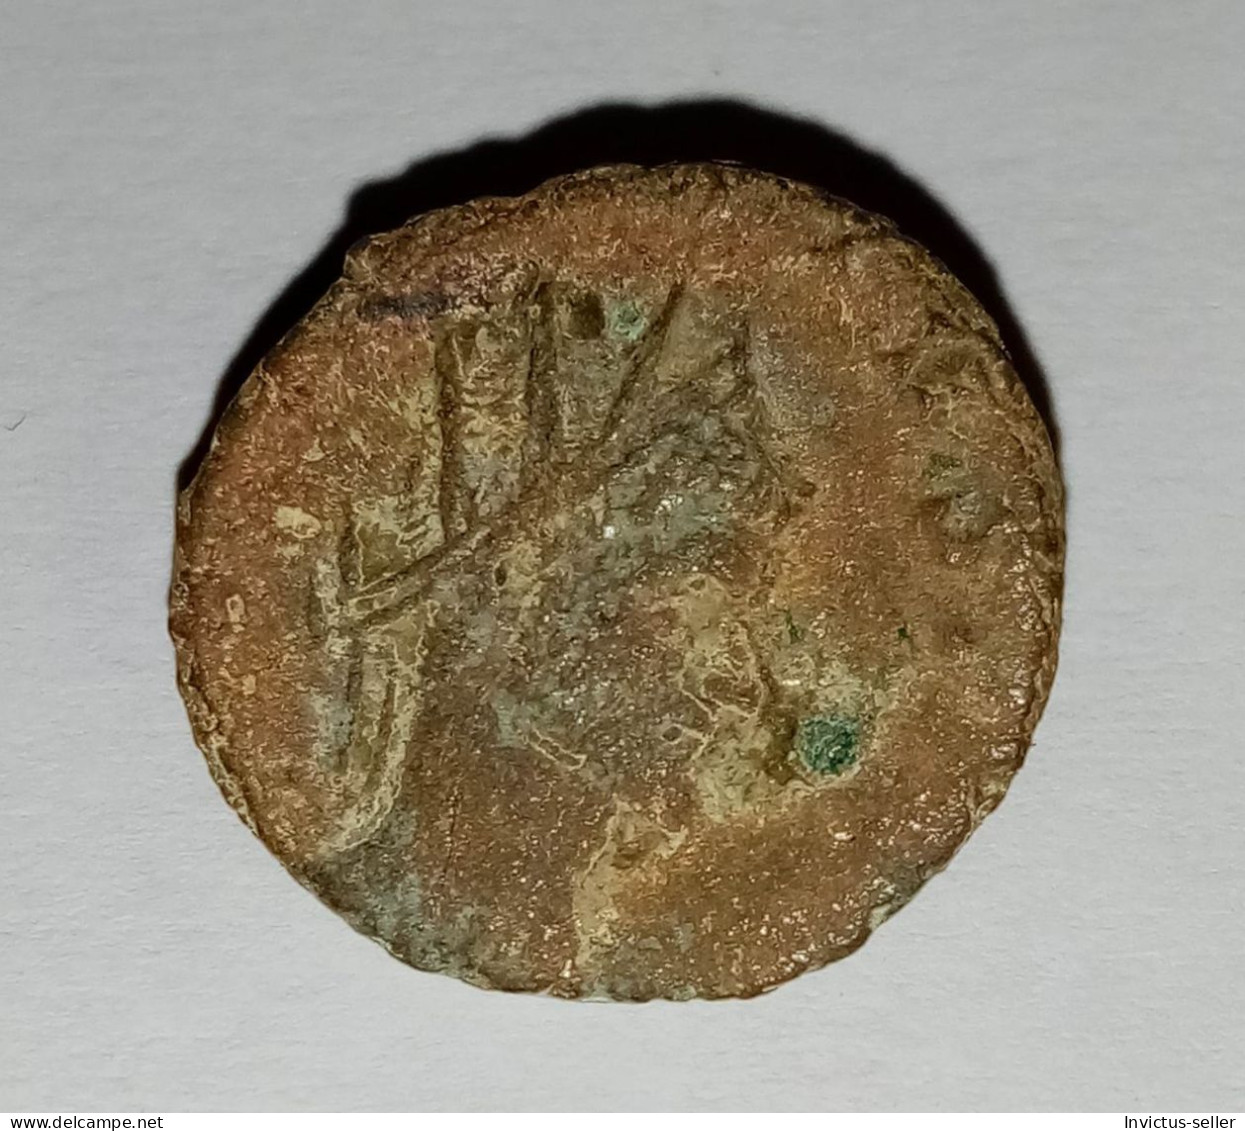 Moneta Romana Imperatore Marcus Aurelius Claudius "Gothicus -  ANCIENT ROMAN COIN  - EMPEROR CLAUDIUS GOTHICUS - 268-270 - Collections